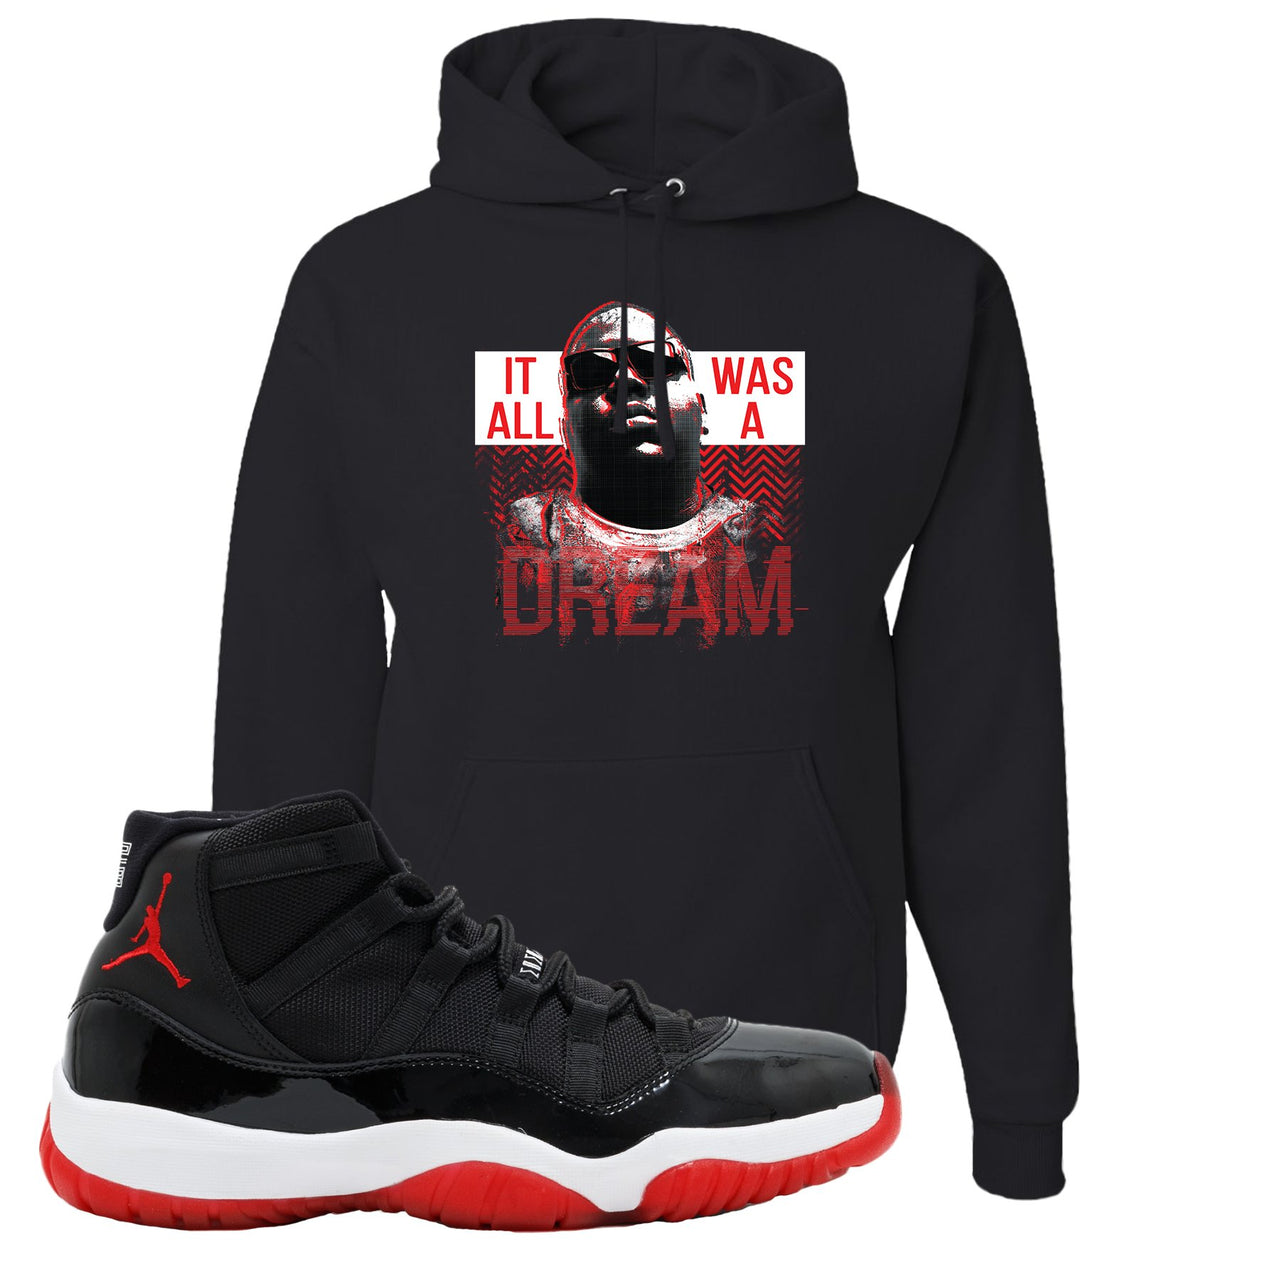 Jordan 11 Bred It Was All A Dream Black Sneaker Hook Up Pullover Hoodie